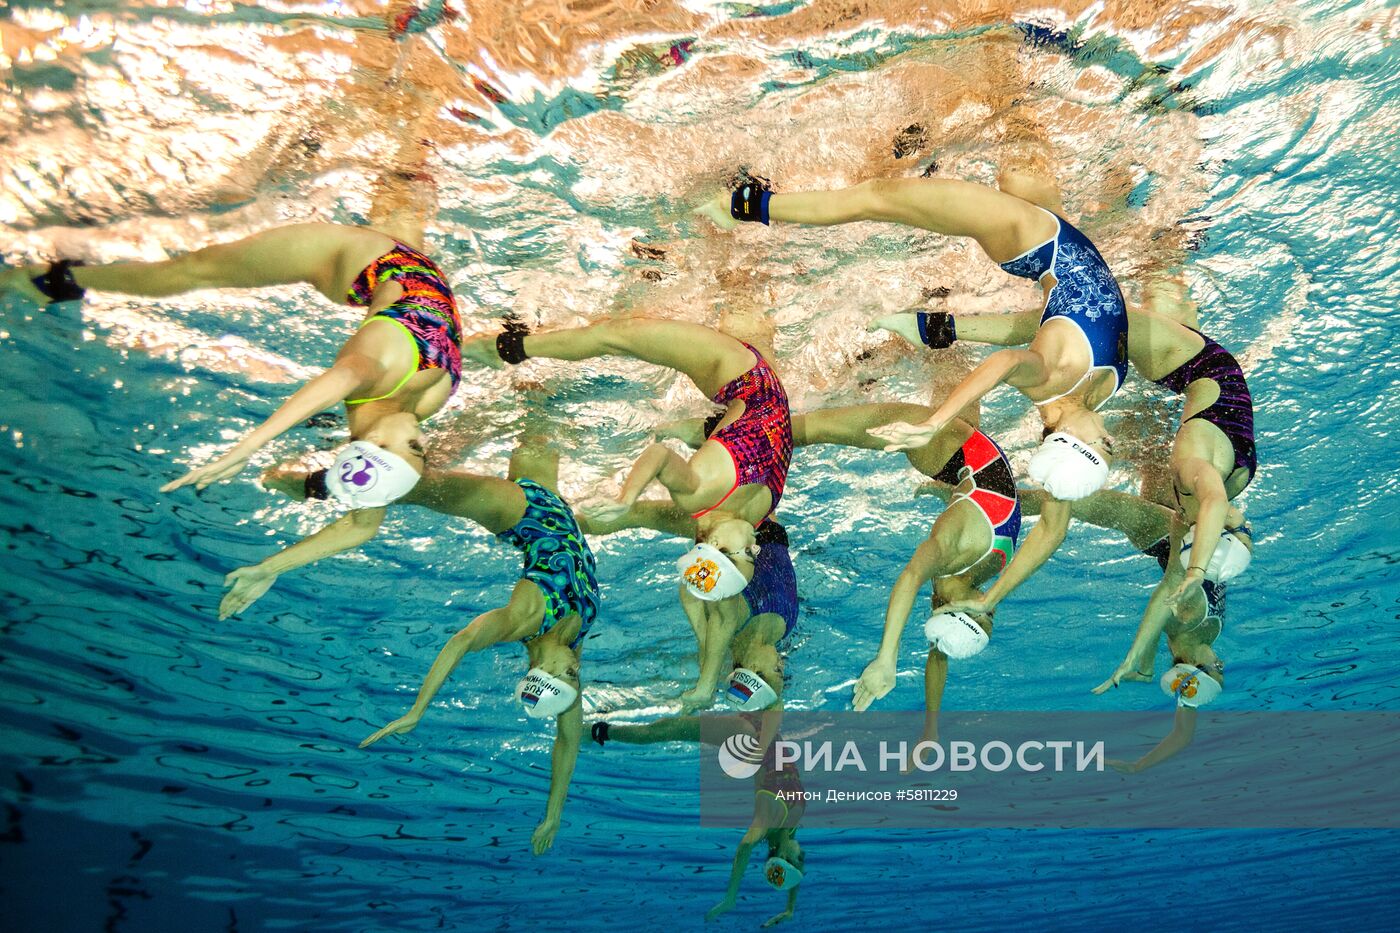 Сборная России по синхронному плаванию